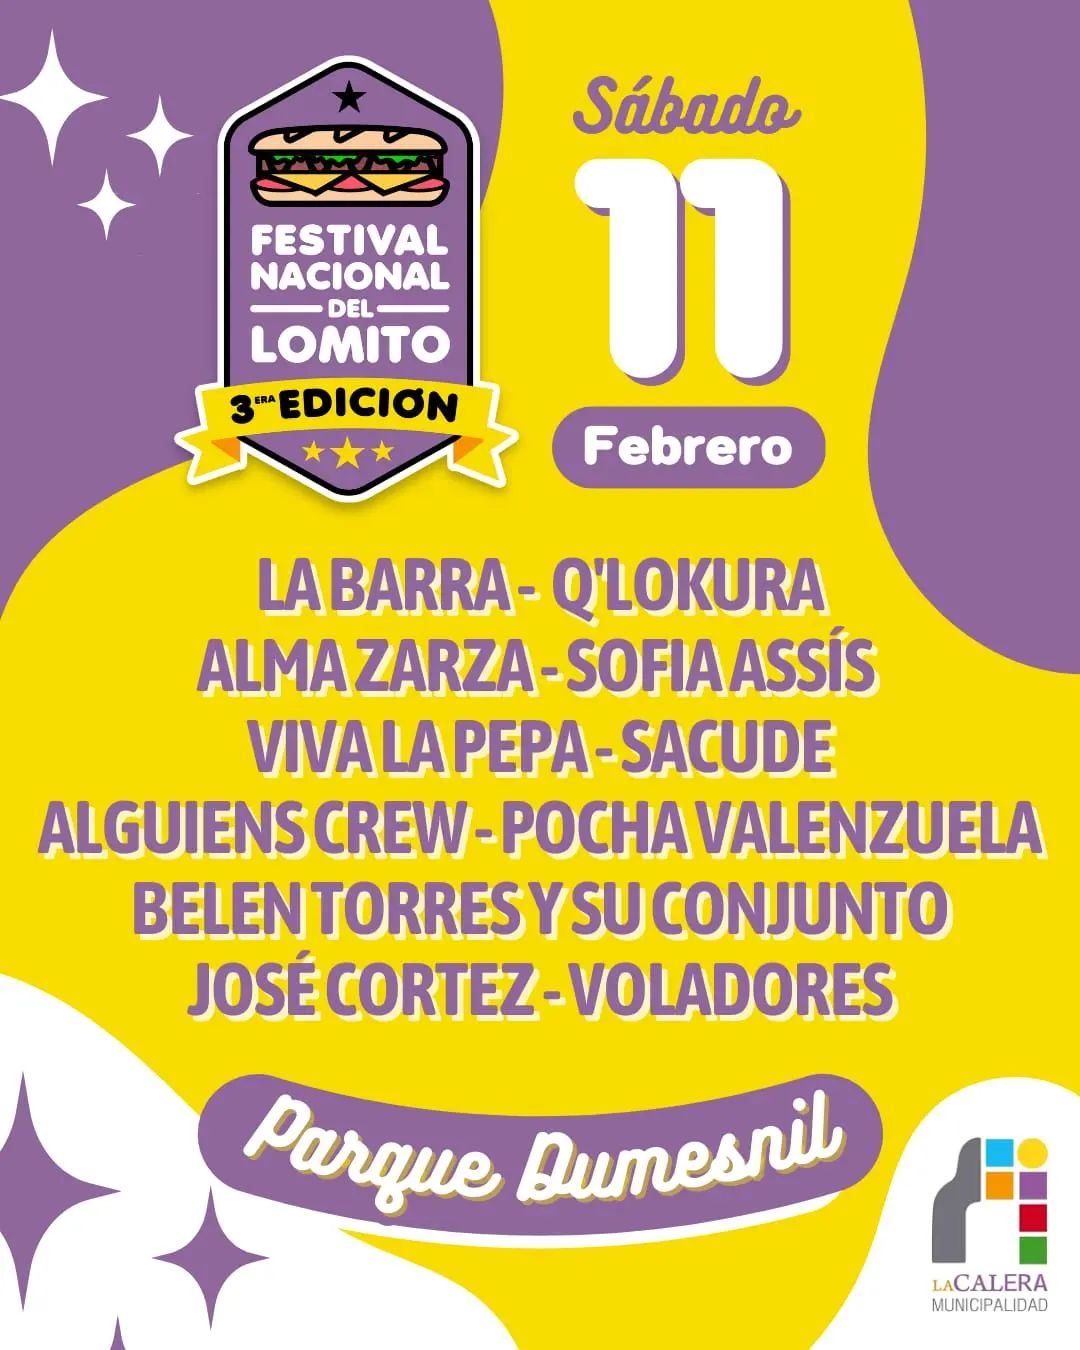 Festival Nacional del Lomito en La Calera: todo lo que tenés que saber • Canal C